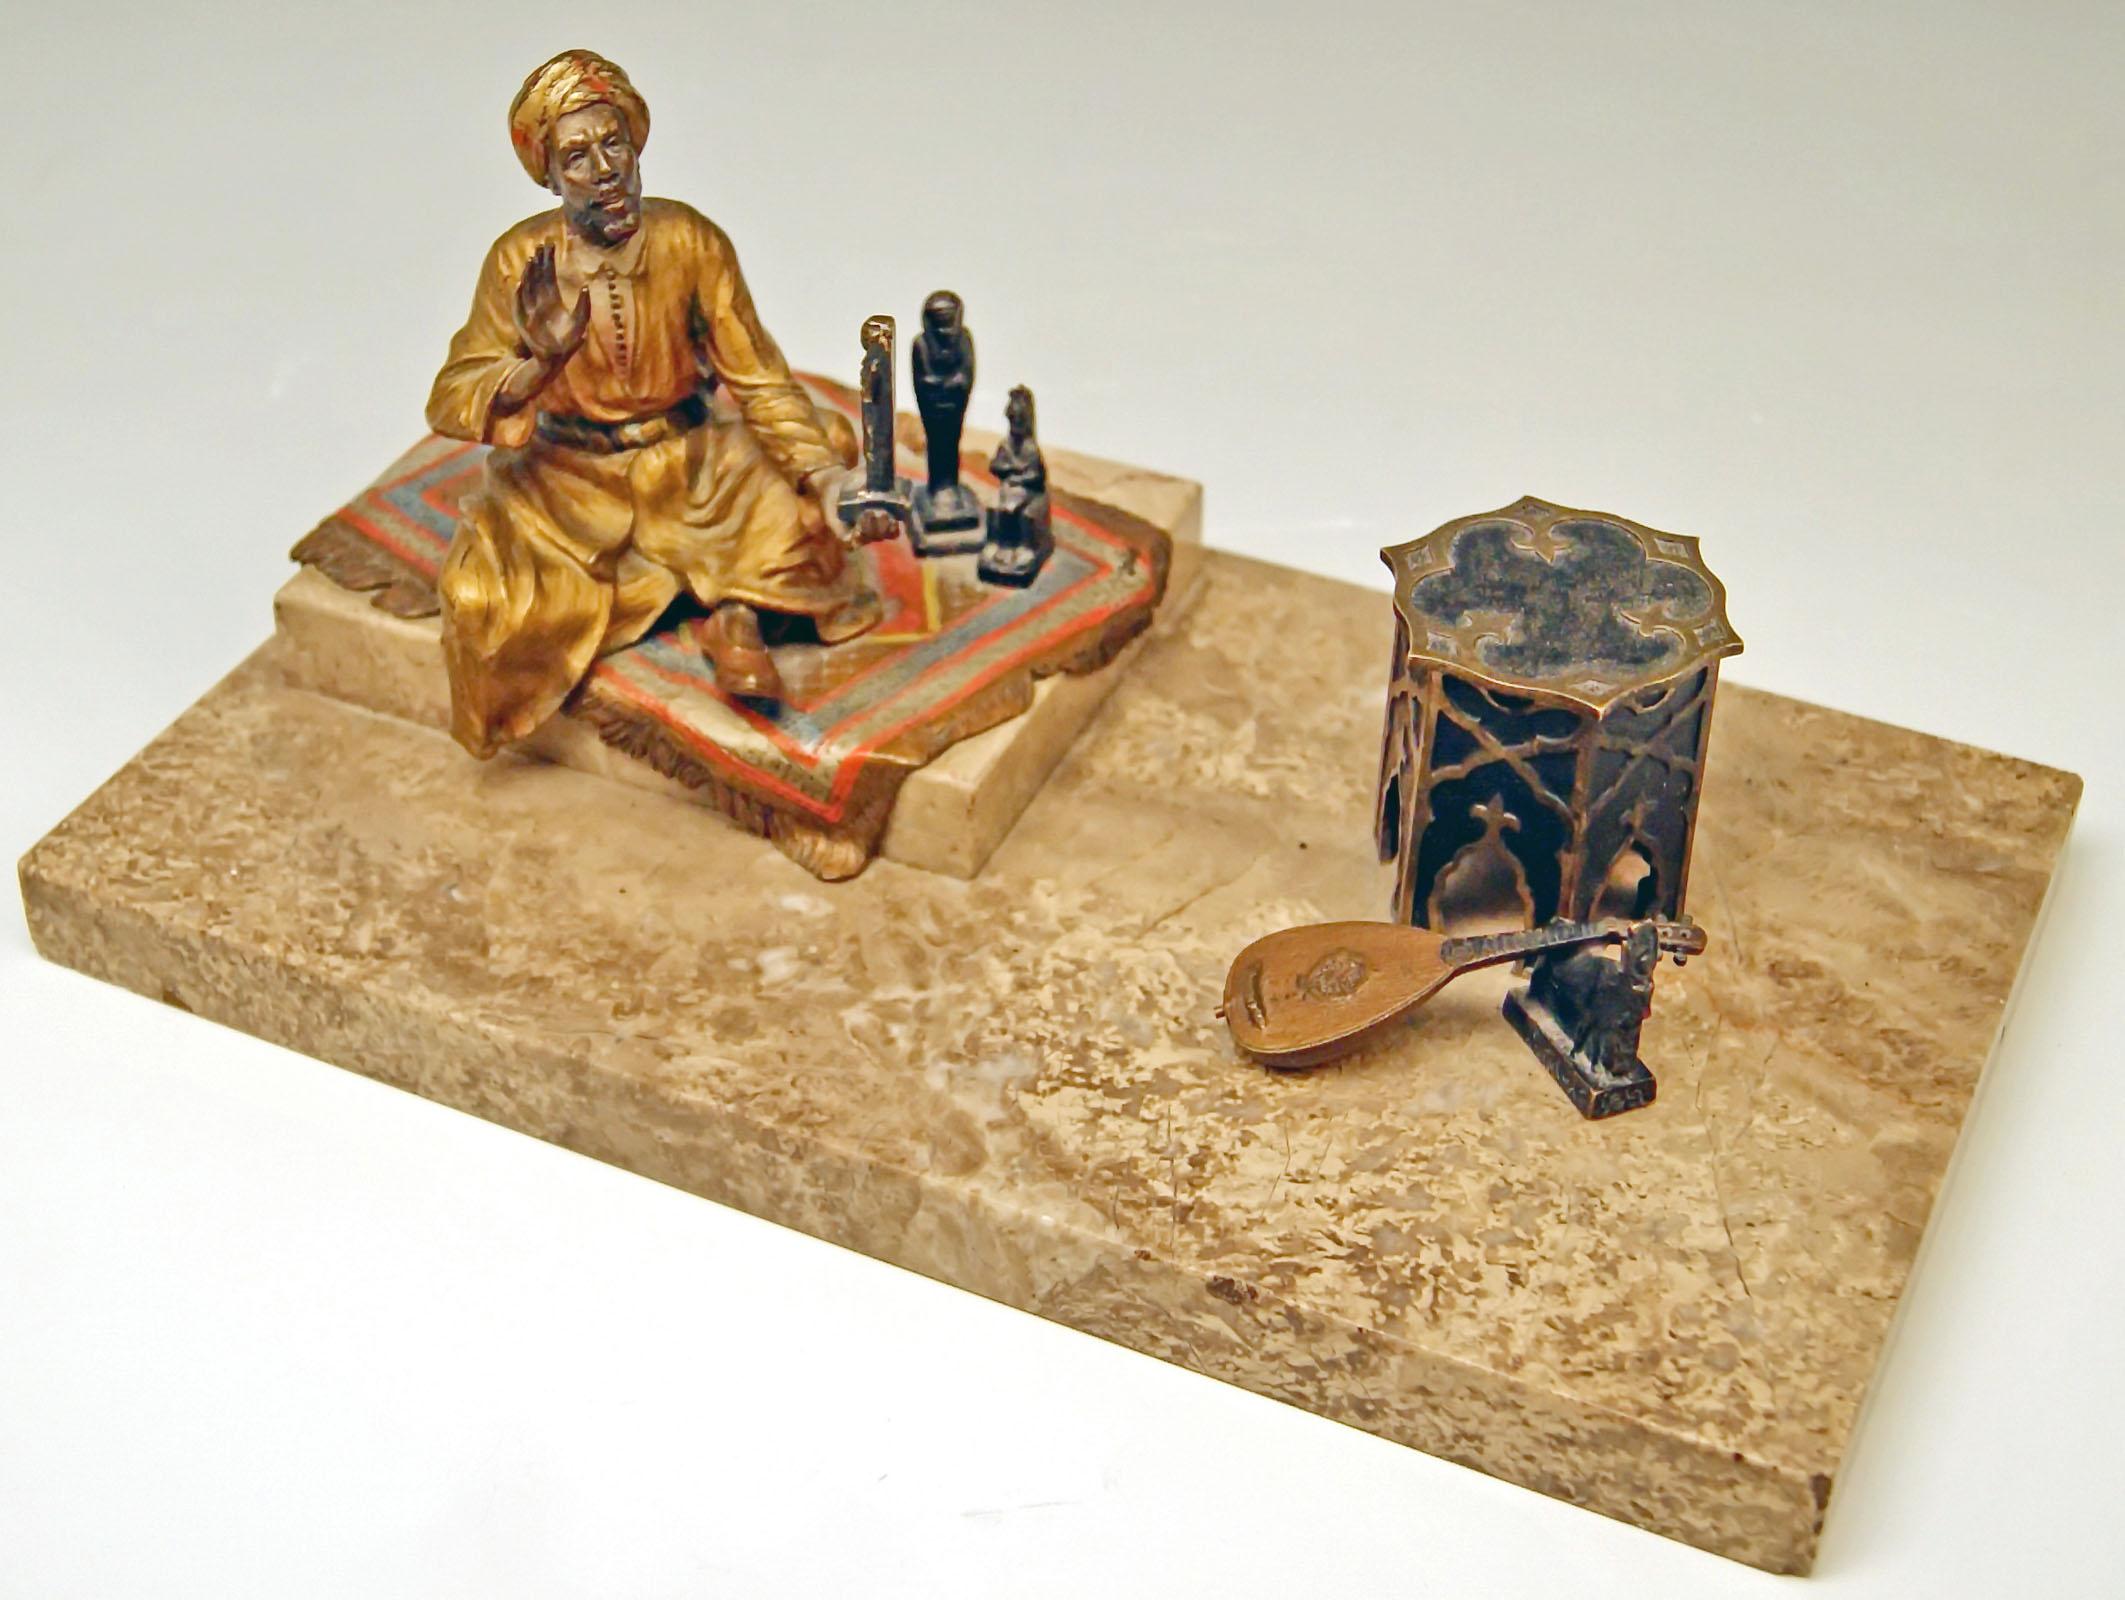 Wunderschöne Bronzefigurengruppe: Arabischer Mann im Mantel (Kamin), der ägyptische Antiquitäten verkauft.
Ein arabischer Mann mit Turban ist damit beschäftigt, den Zuschauern ägyptische Figuren zu präsentieren: 
Der Mann hat auf einem Teppich